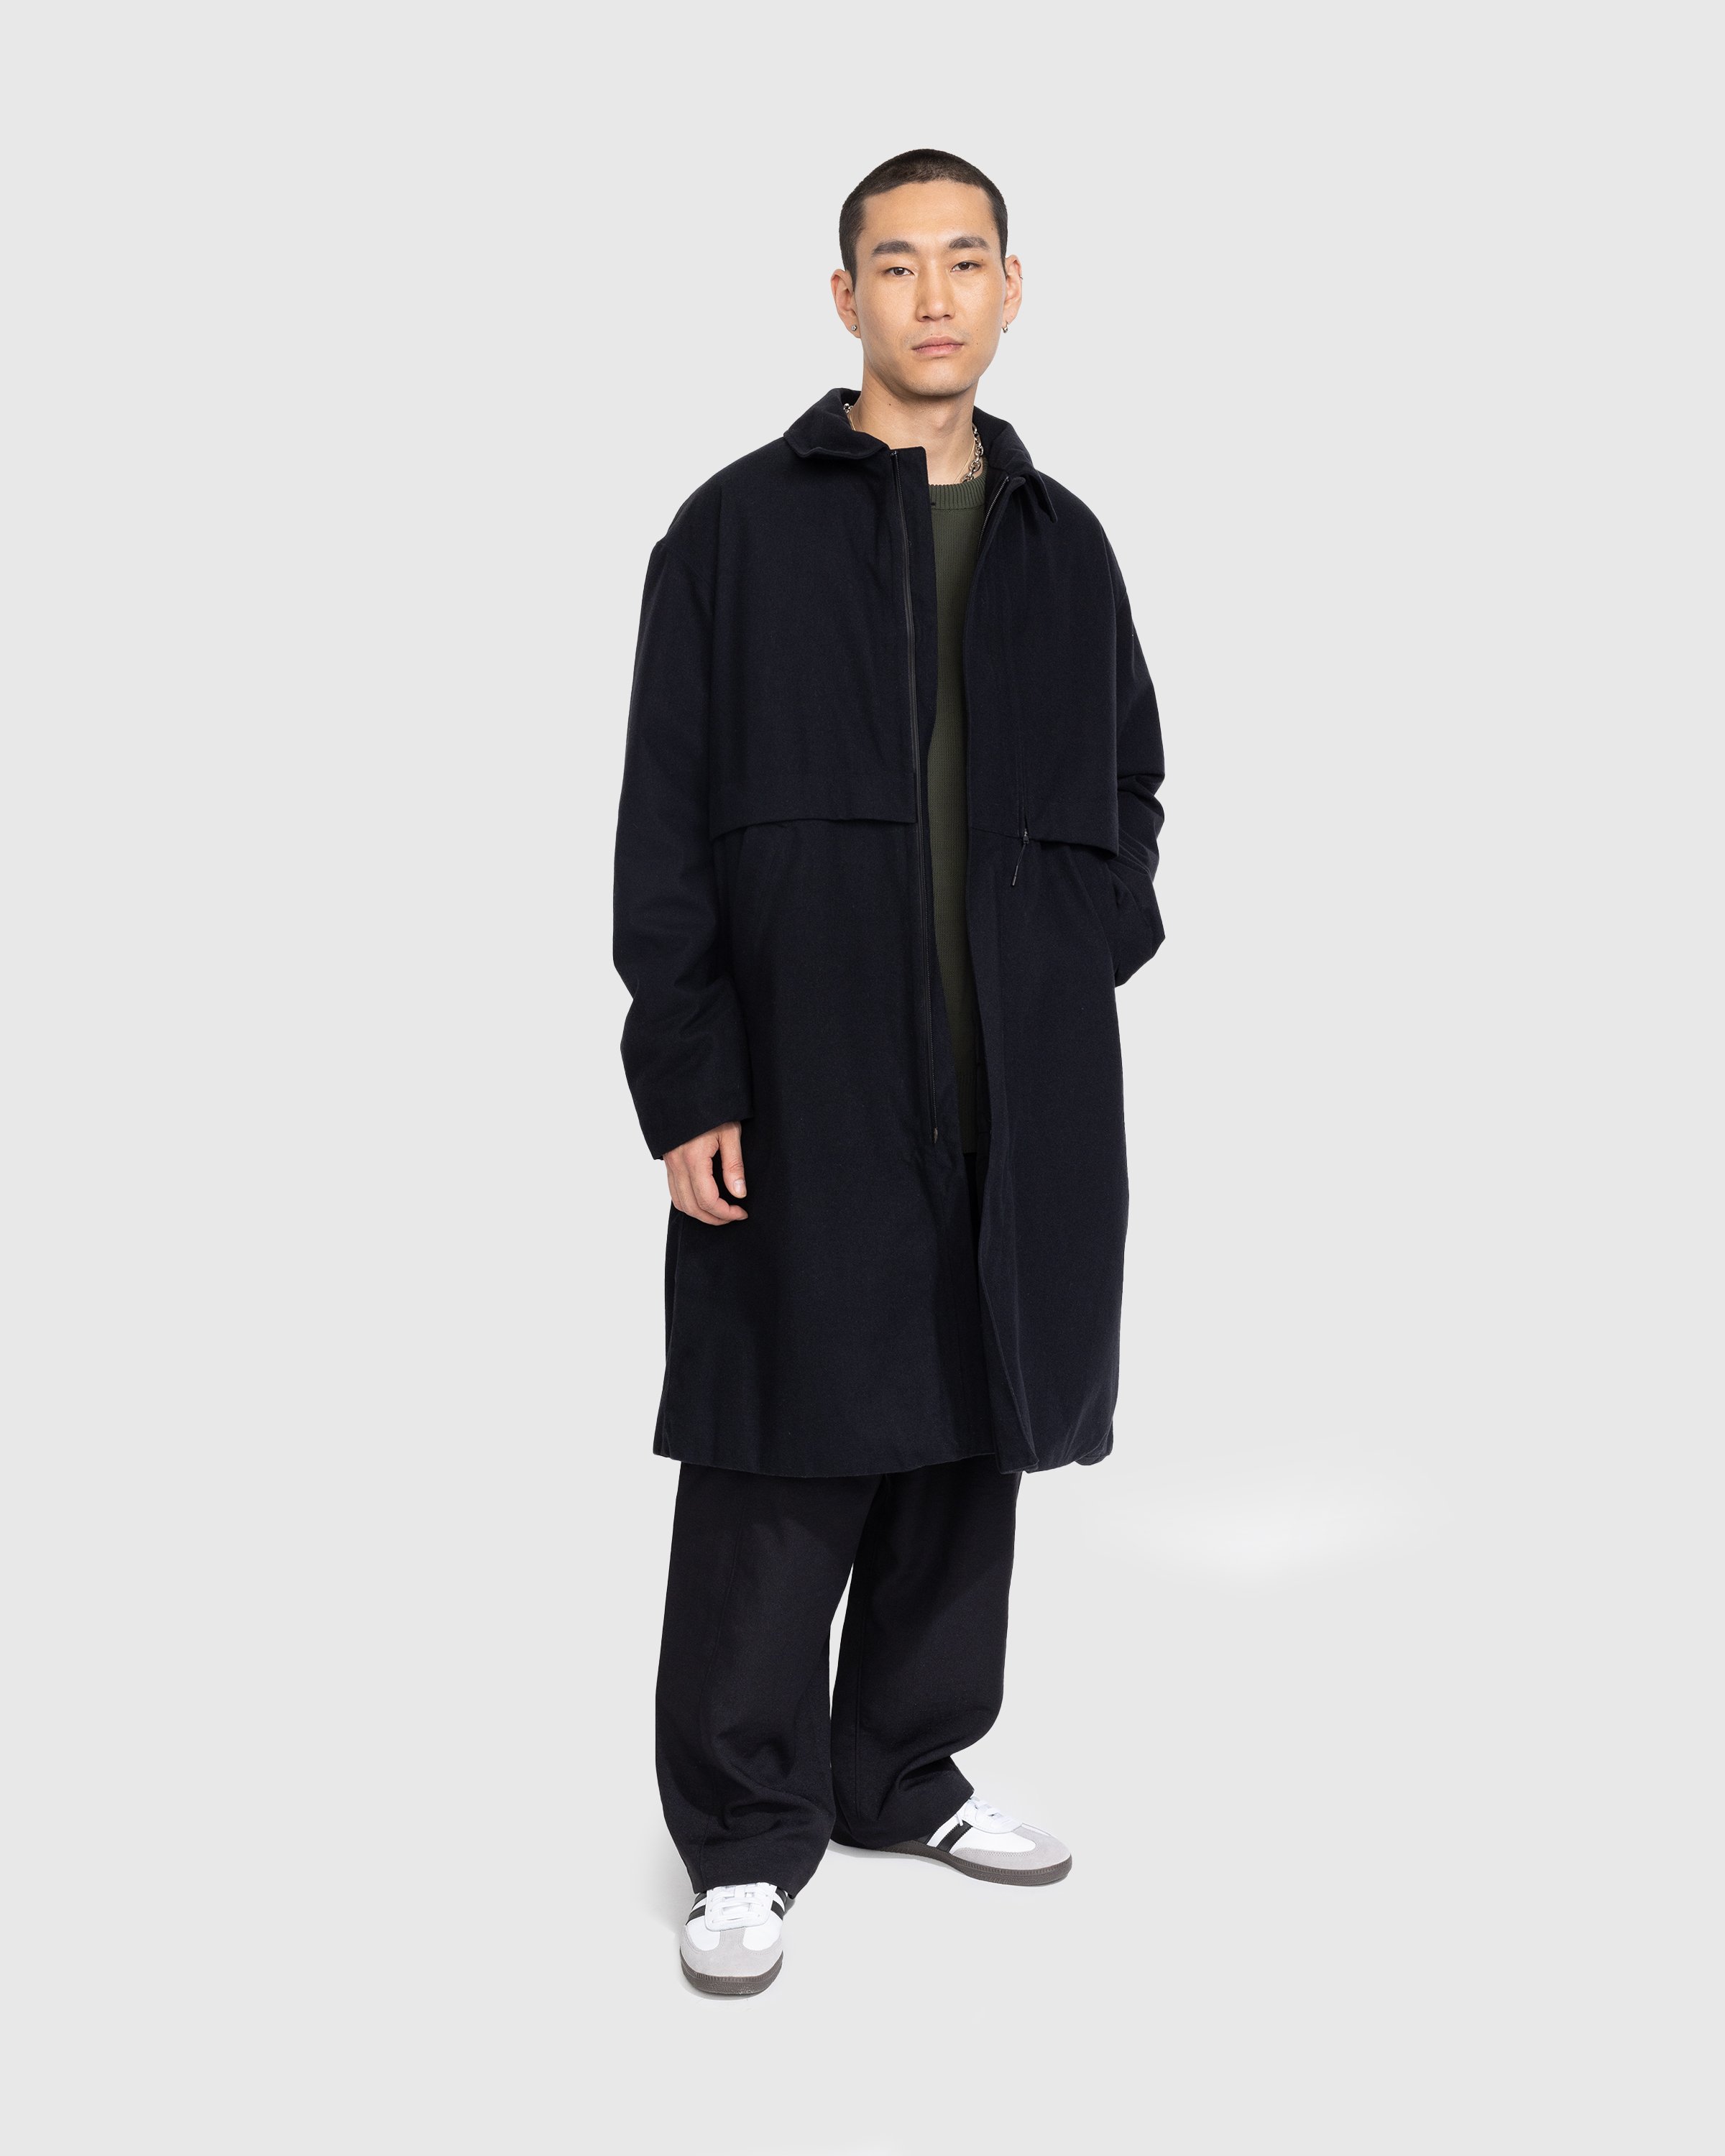 Y-3 - CL RGTX Coat - Clothing - Black - Image 2